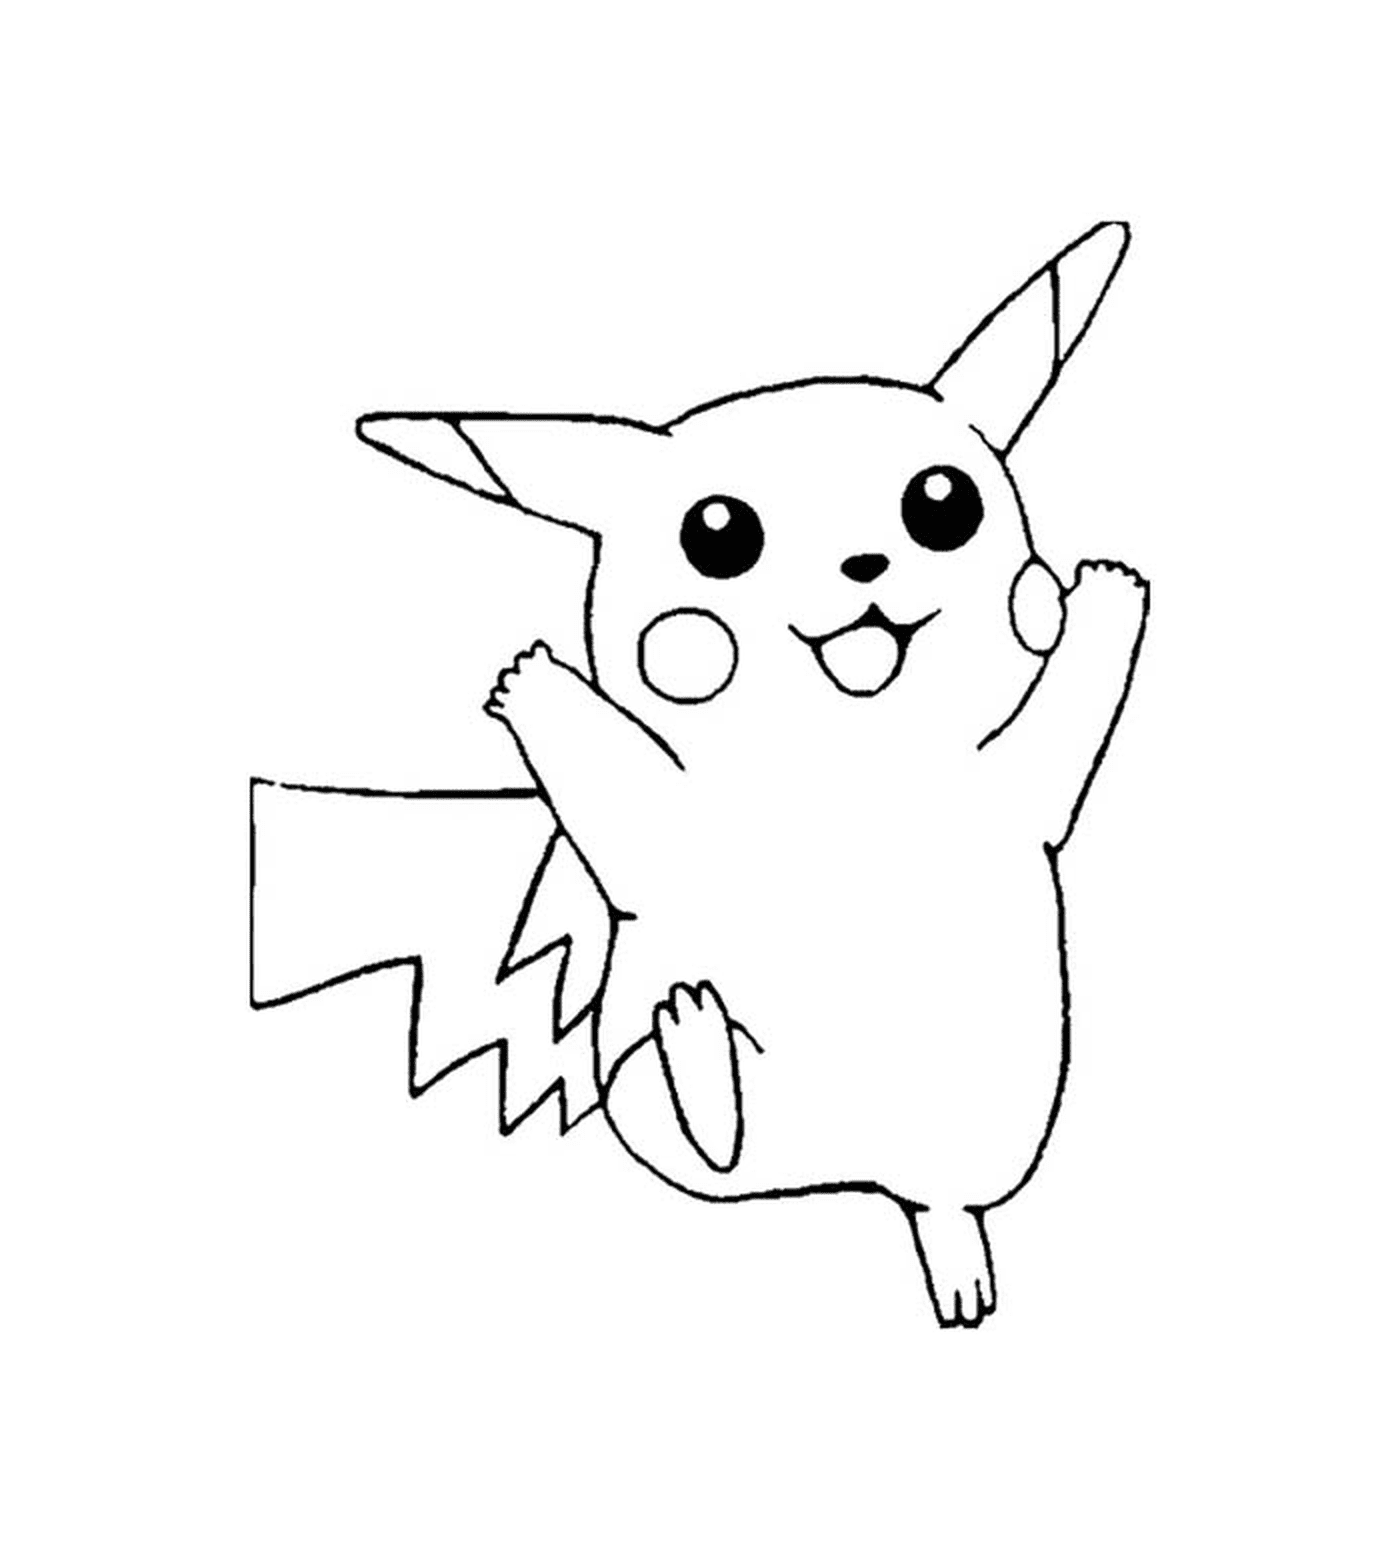  Pikachu, lindo y eléctrico 